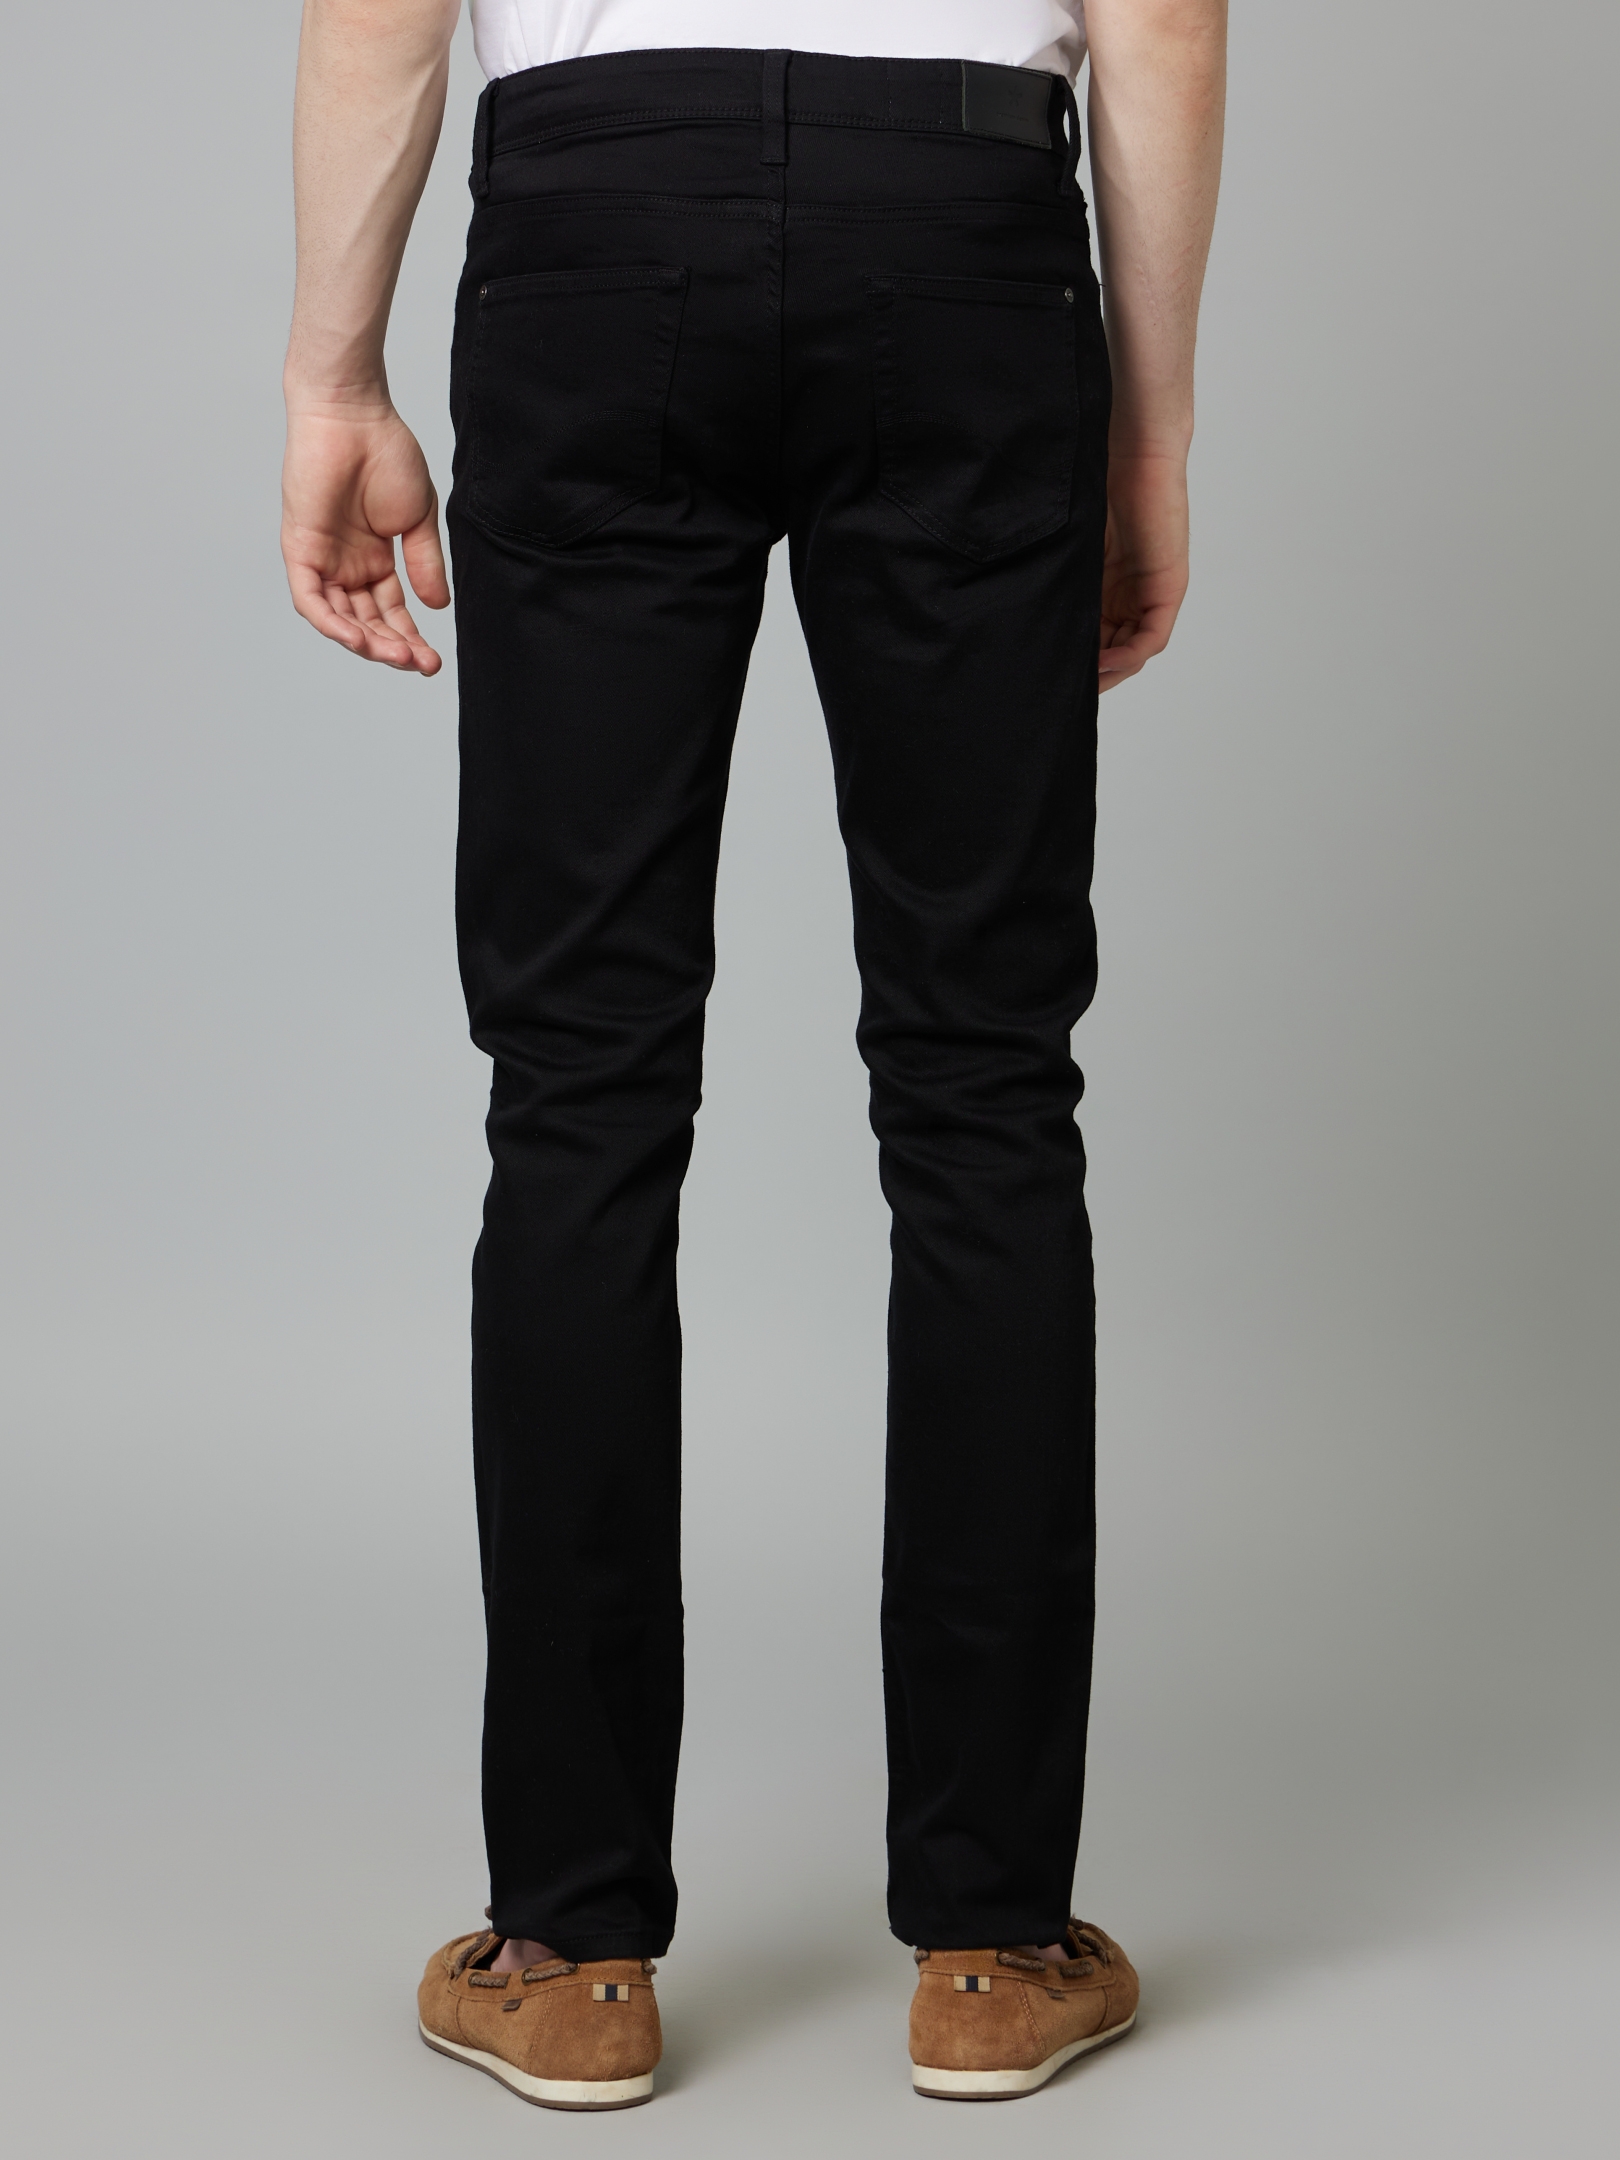 Men's Black Cotton Blend Solid Regular Jeans